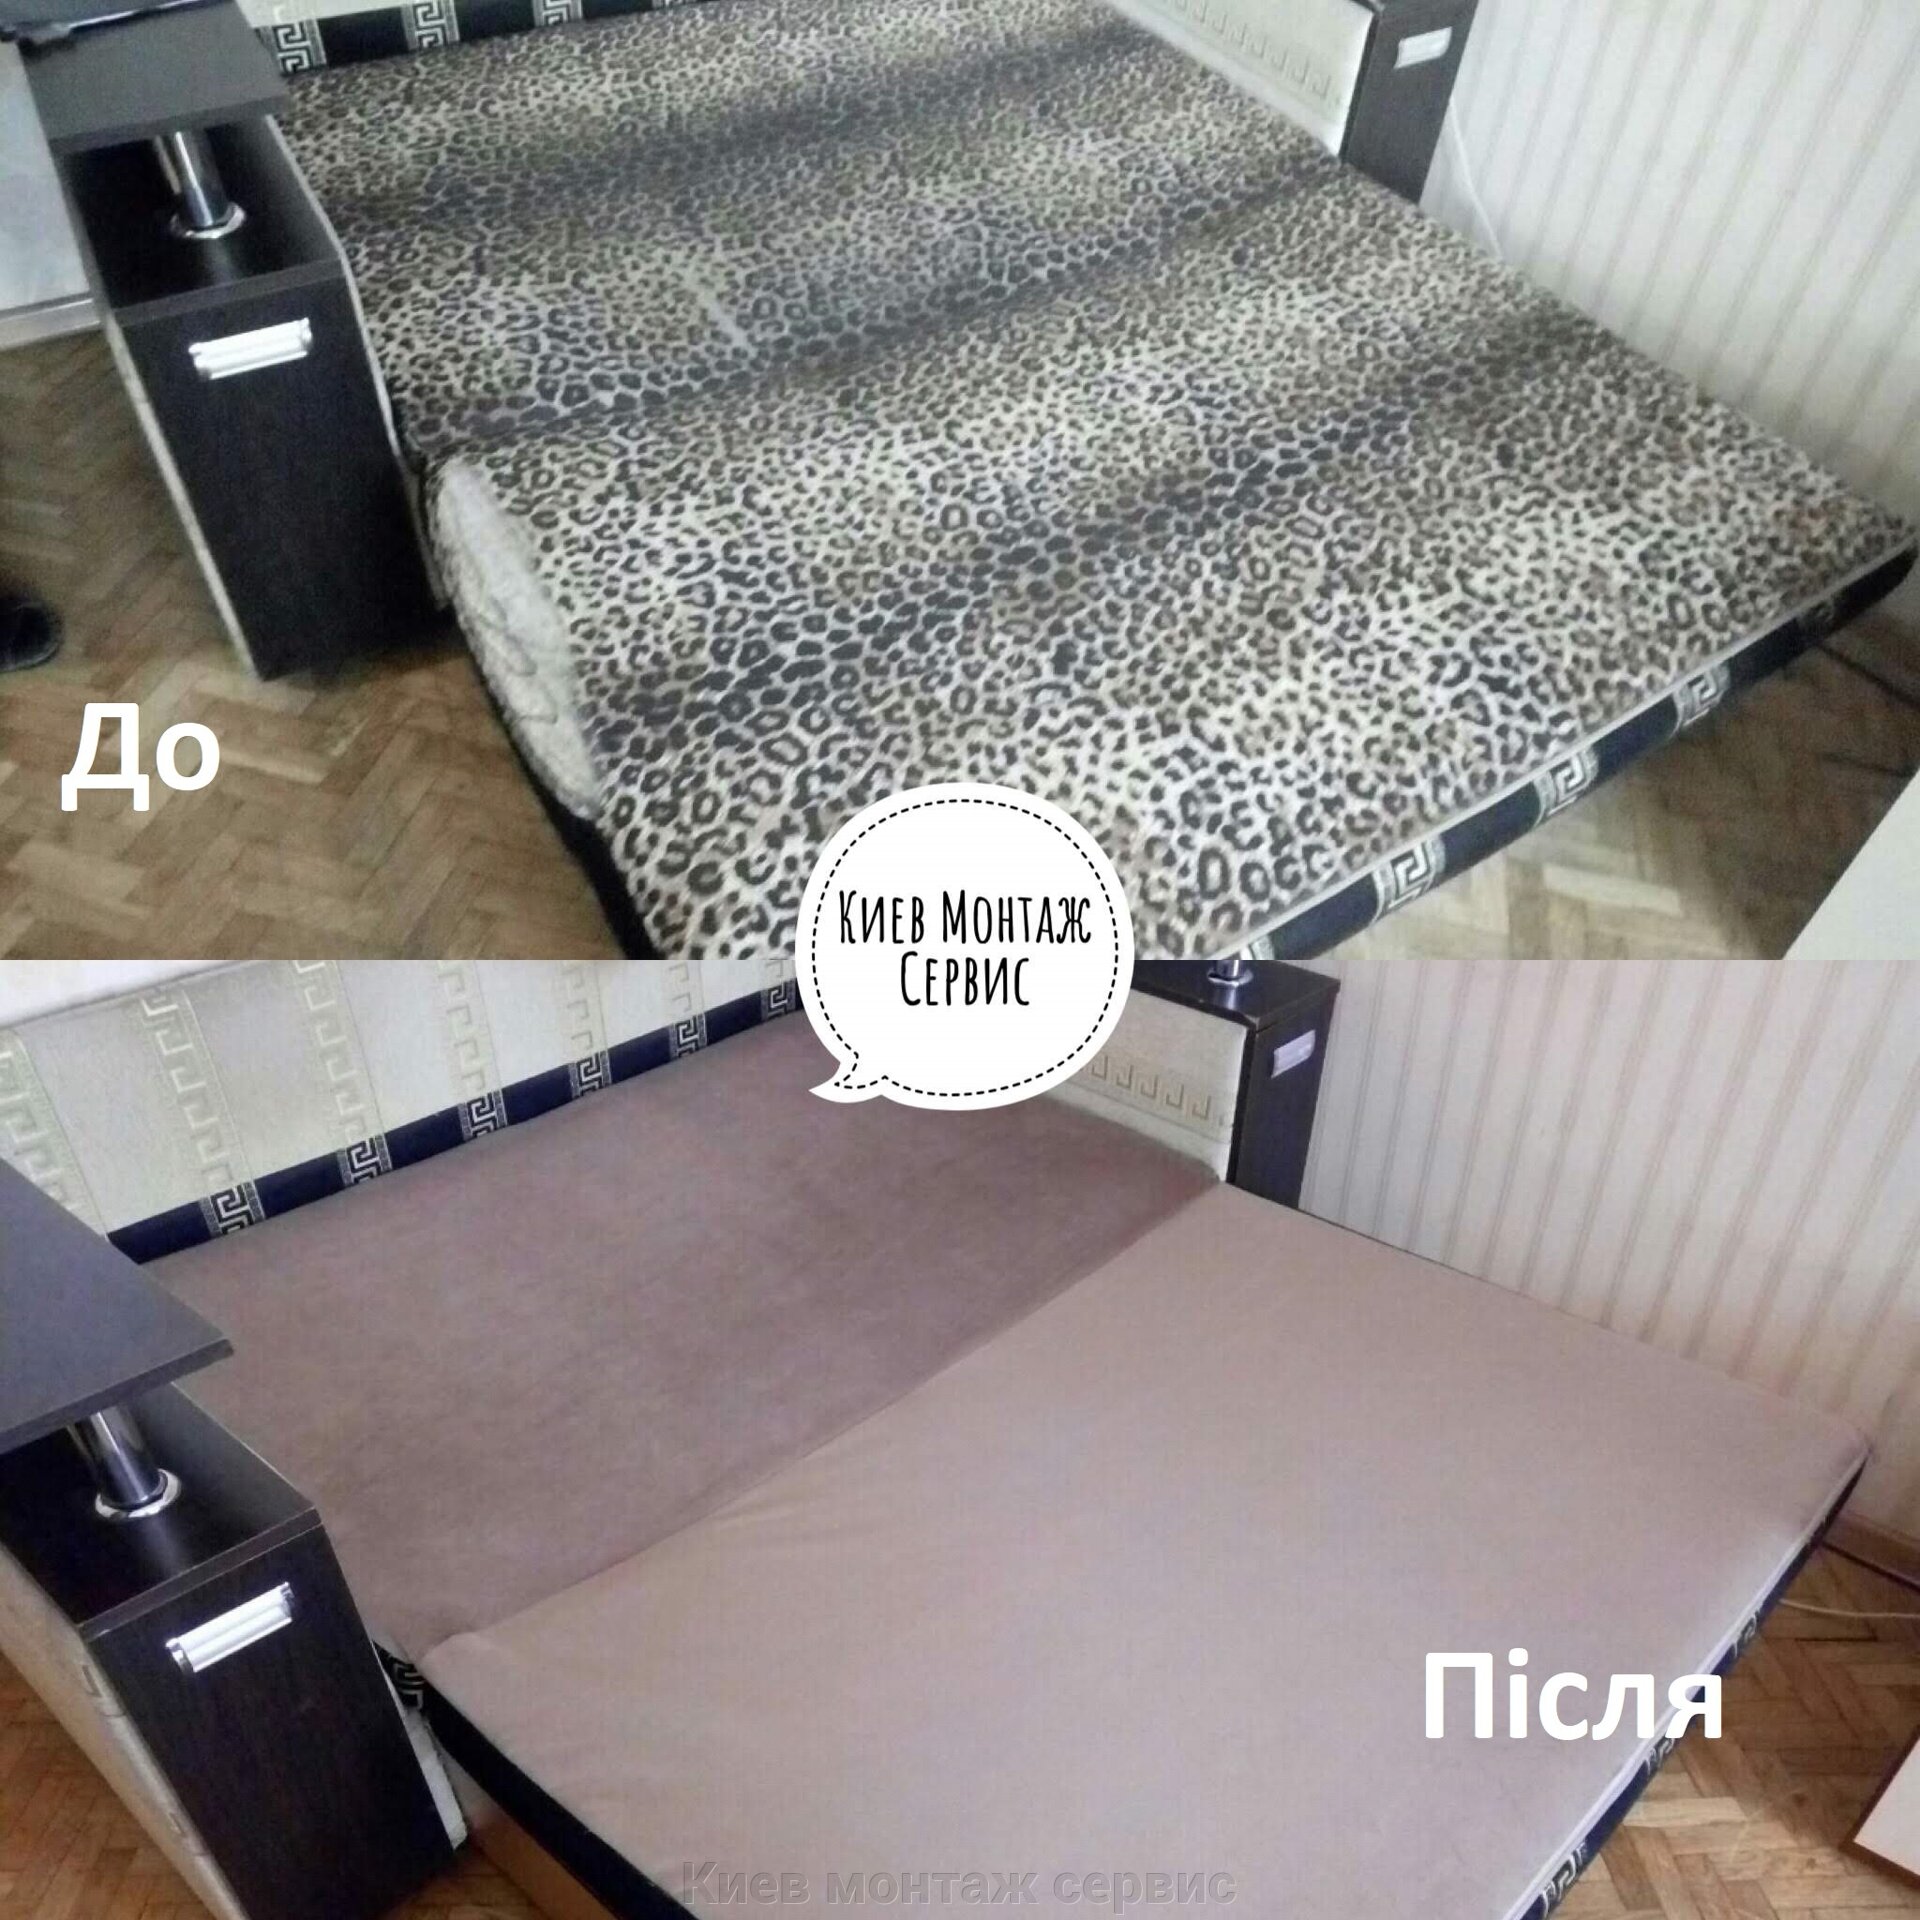 Починить диван Киев, Бортничи, Гнидын. Перетяжка, обивка мебели